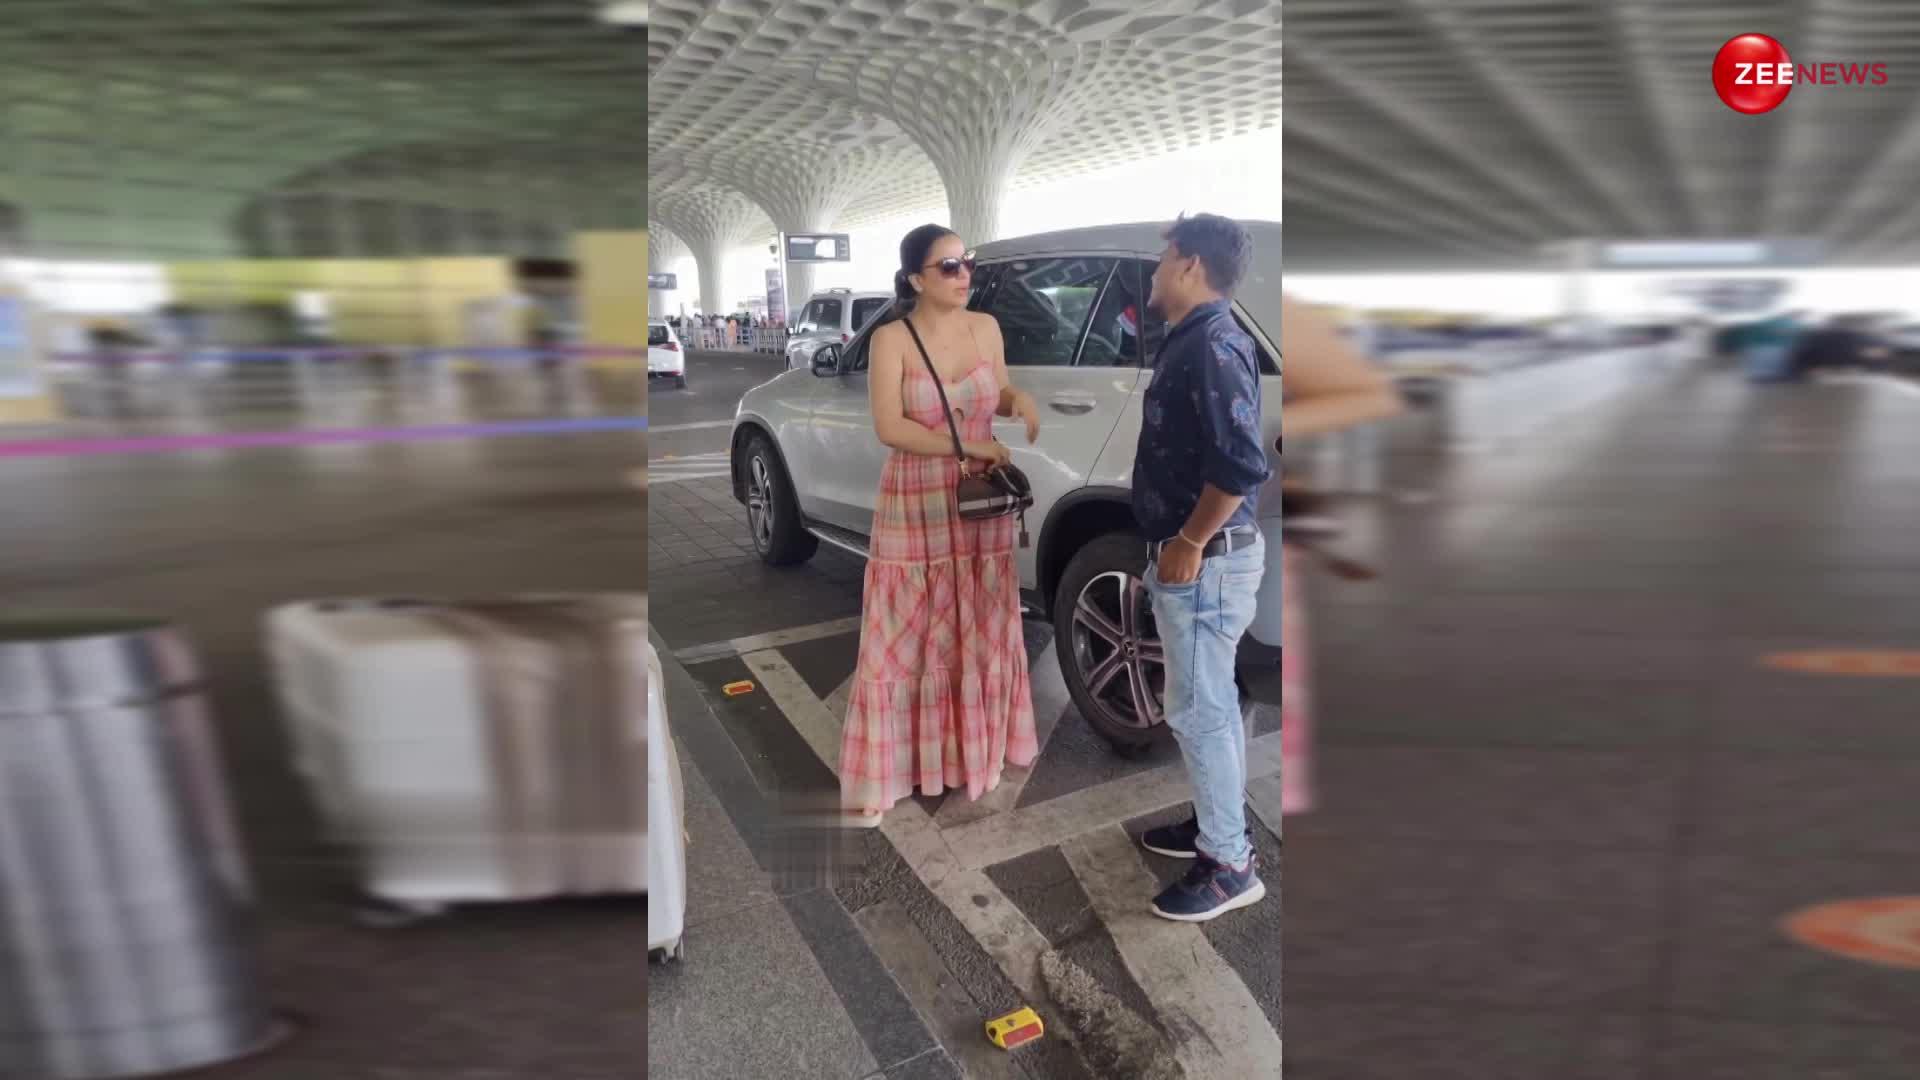 मेजपोश के कपड़े की ड्रेस बनाकर एयरपोर्ट पहुंची Shraddha Arya, एक्ट्रेस को ऐसा डोरी वाला ड्रेस पहने देख; सनक गया लोगों का दिमाग